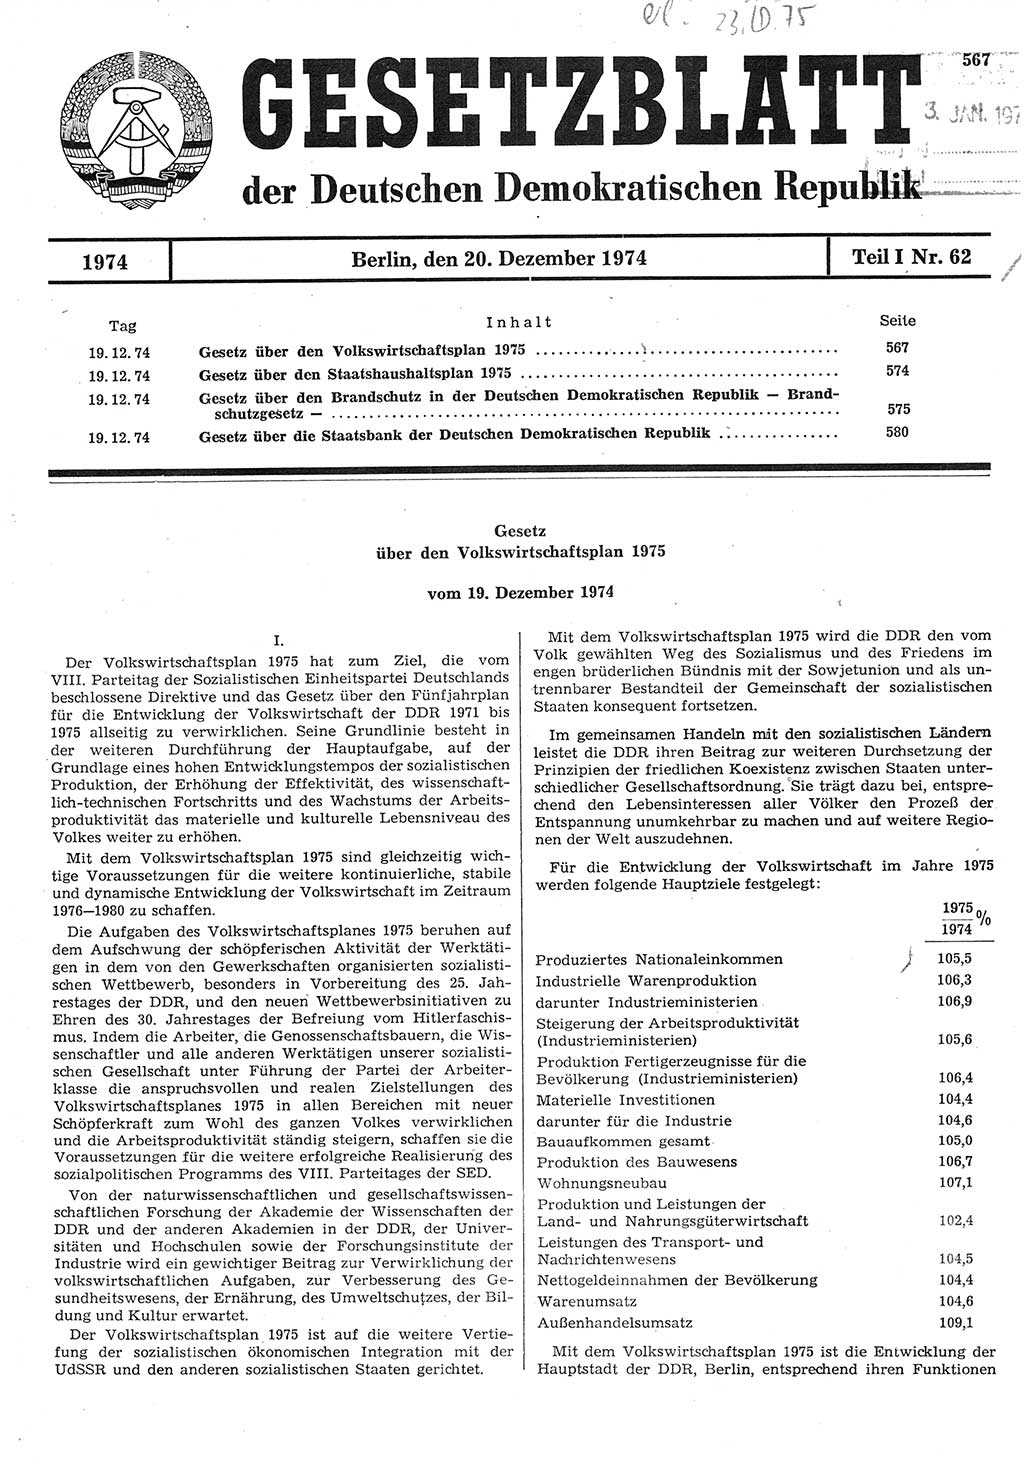 Gesetzblatt (GBl.) der Deutschen Demokratischen Republik (DDR) Teil Ⅰ 1974, Seite 567 (GBl. DDR Ⅰ 1974, S. 567)